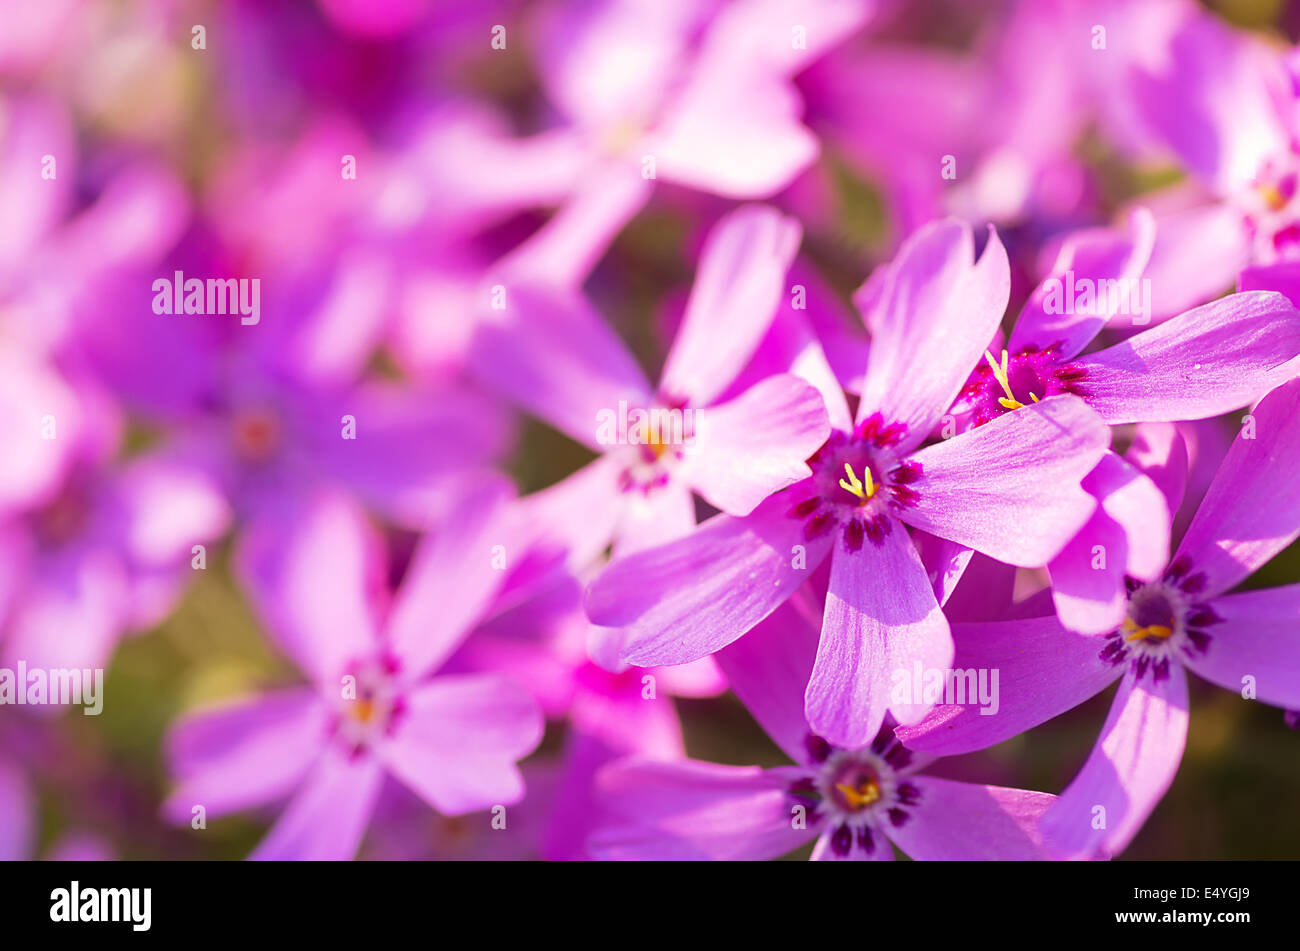 Phlox szydlasty with pink flowers Stock Photo